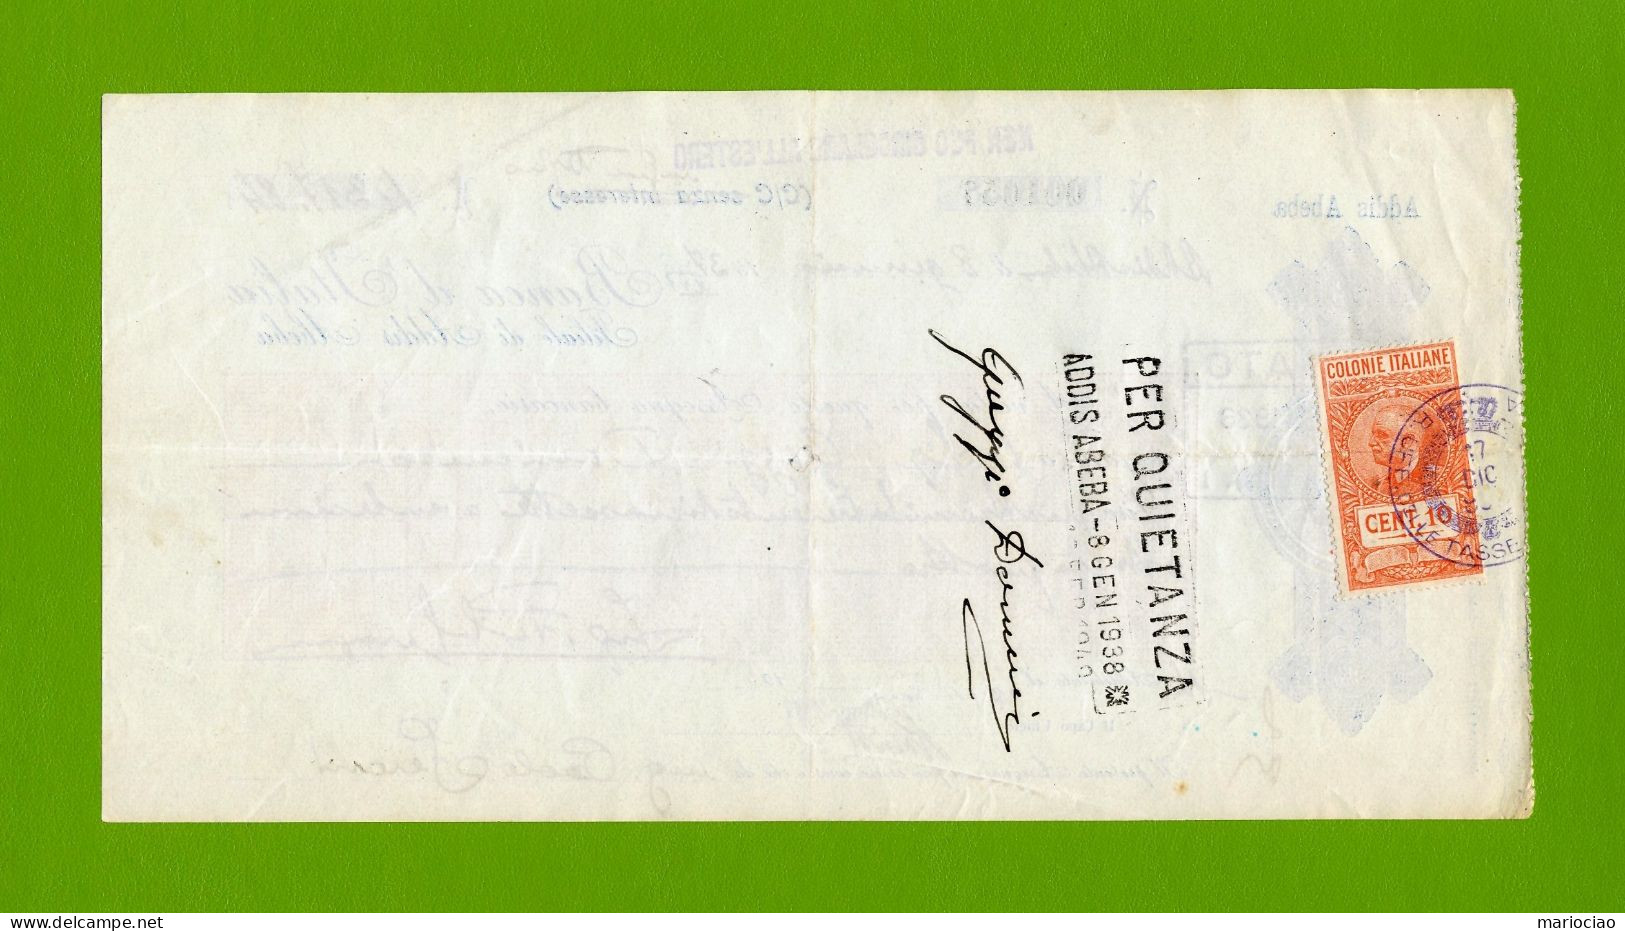 T-ITcheck Banca D'Italia Addis Abeba 1937 Rosso + Marca Fiscale - Bank & Insurance